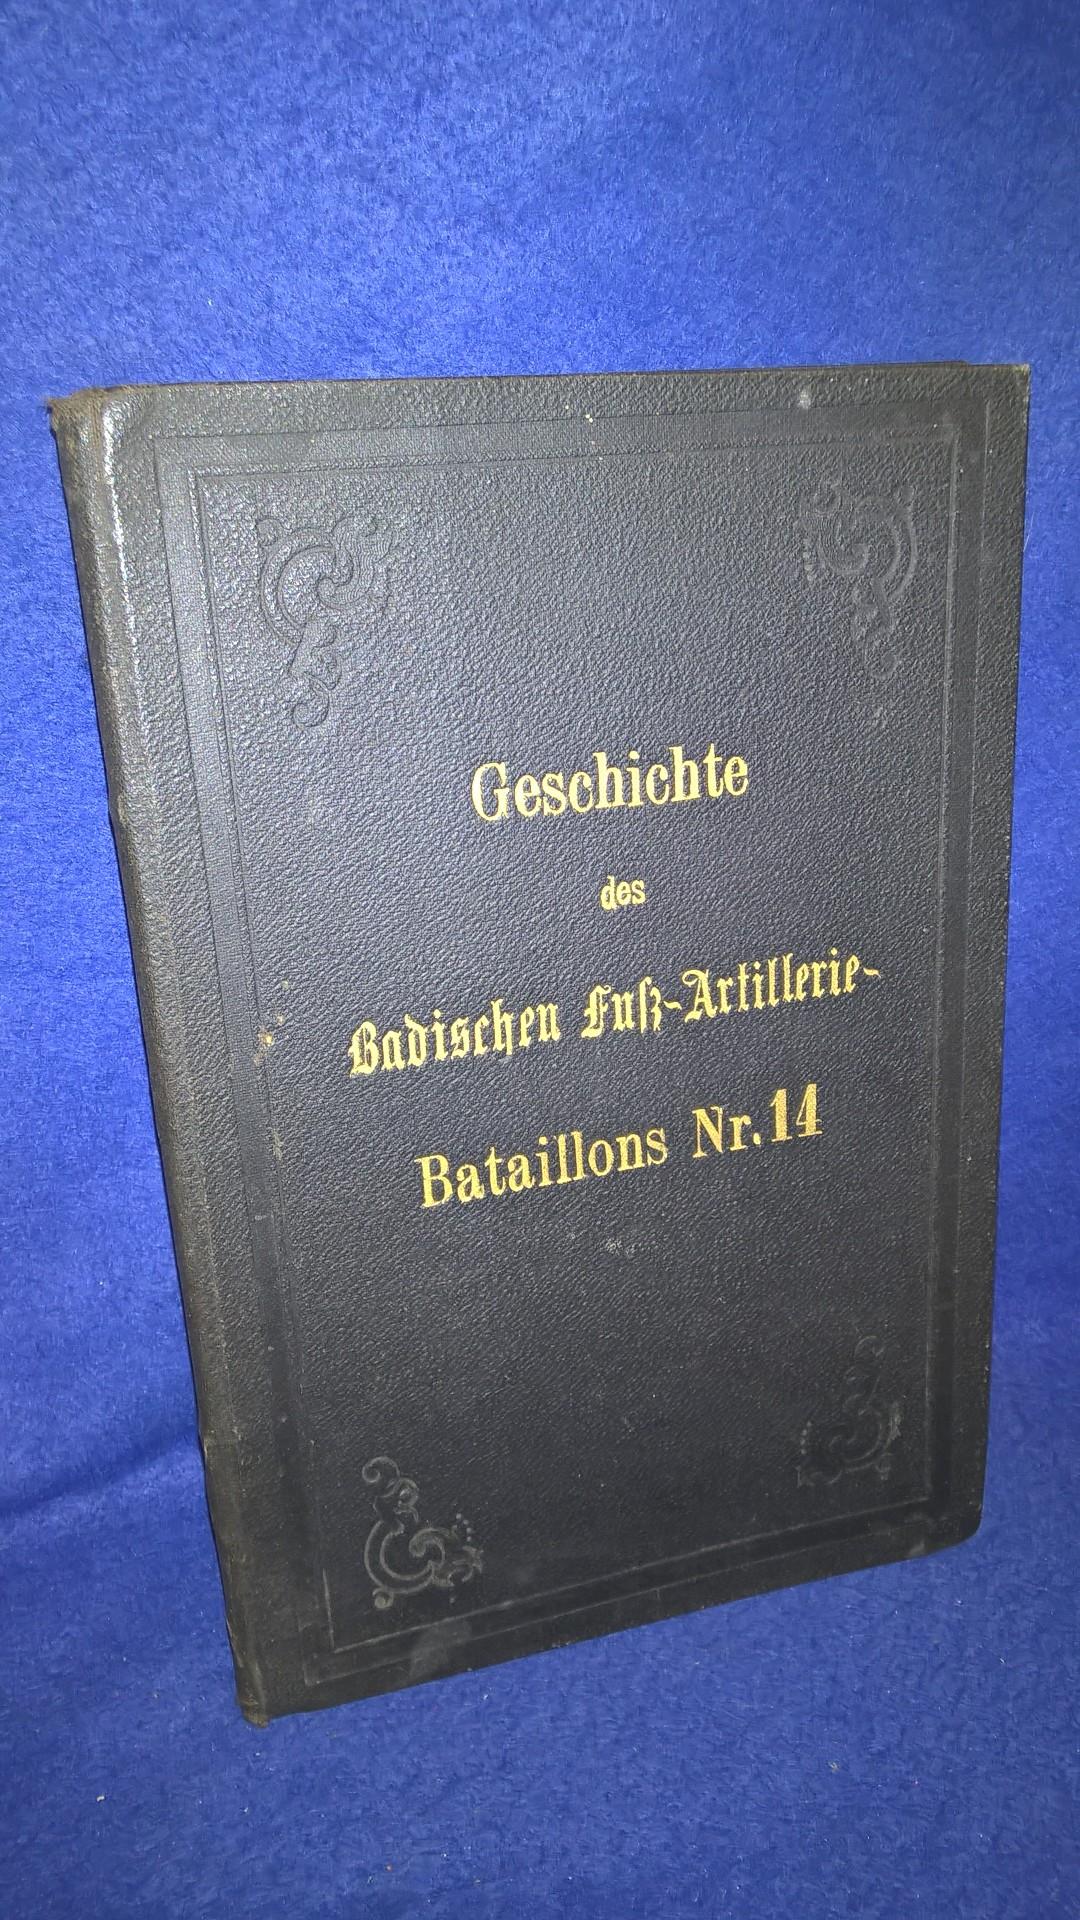 Geschichte des Badischen Fuß-Artillerie-Bataillons Nr. 14.